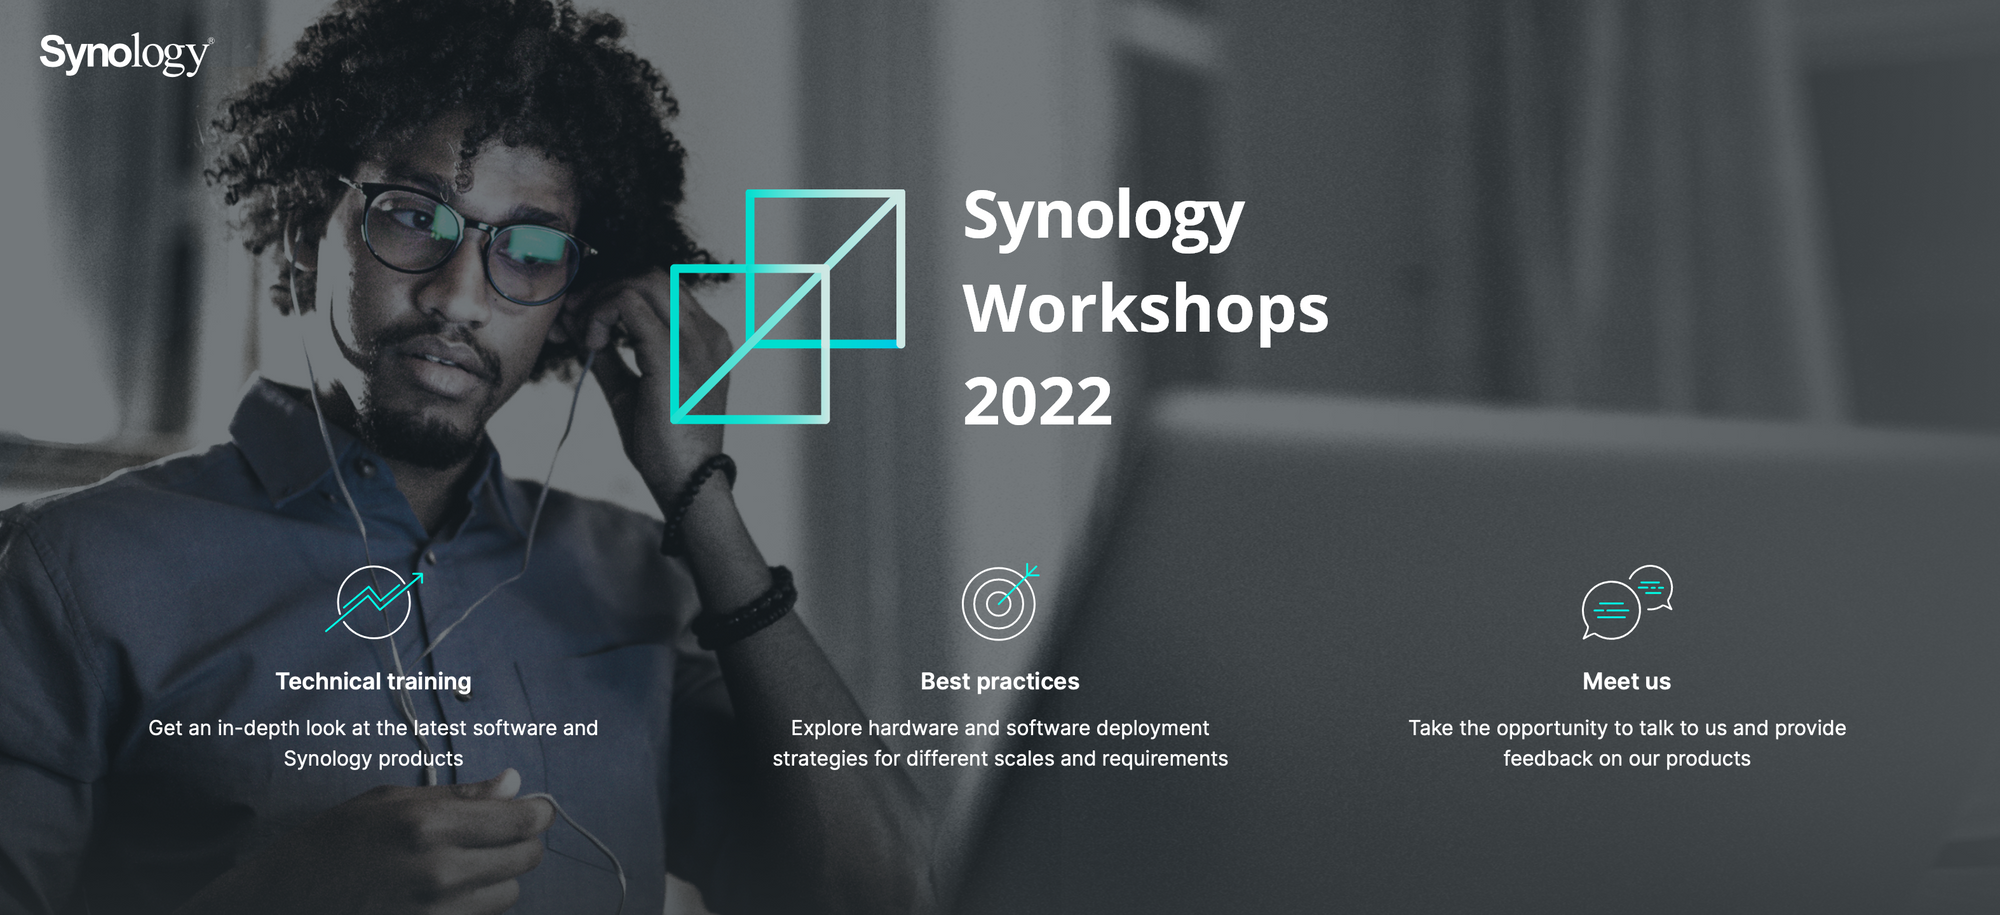 Synology Workshops 2022